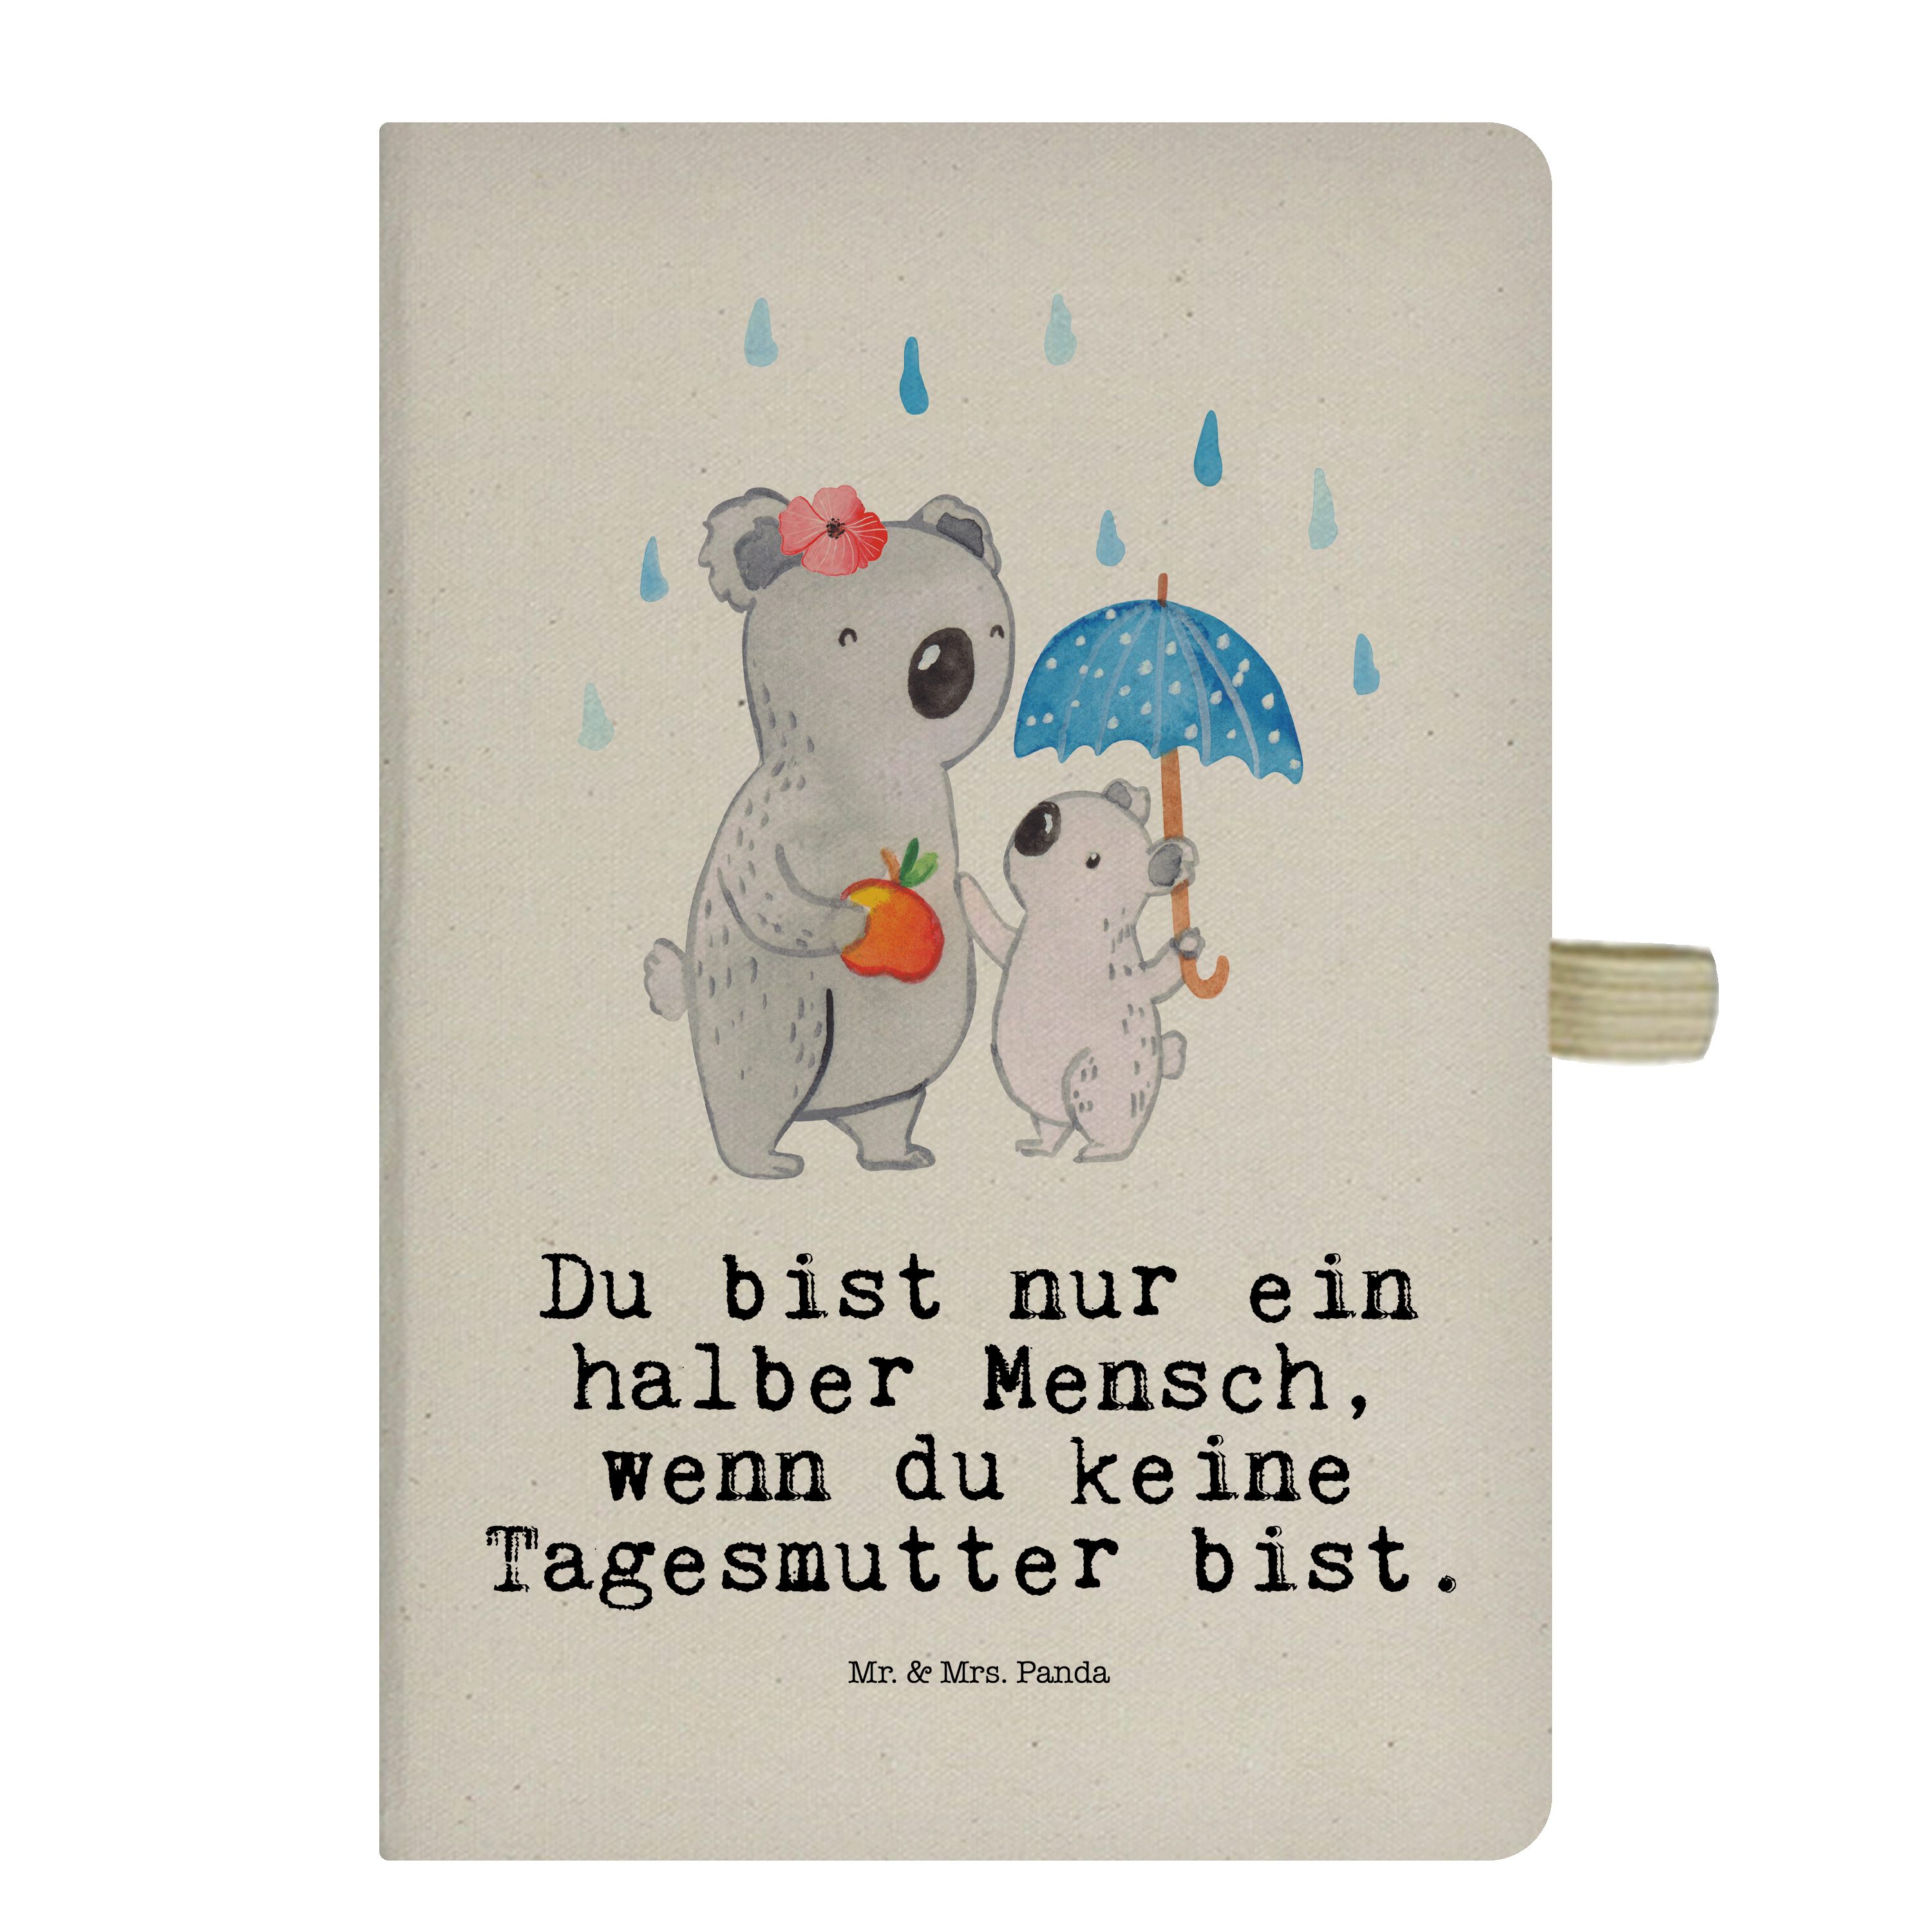 Mr. & Mrs. Panda Notizbuch Tagesmutter mit Herz - Transparent - Geschenk, Schreibheft, Journal, Mr. & Mrs. Panda